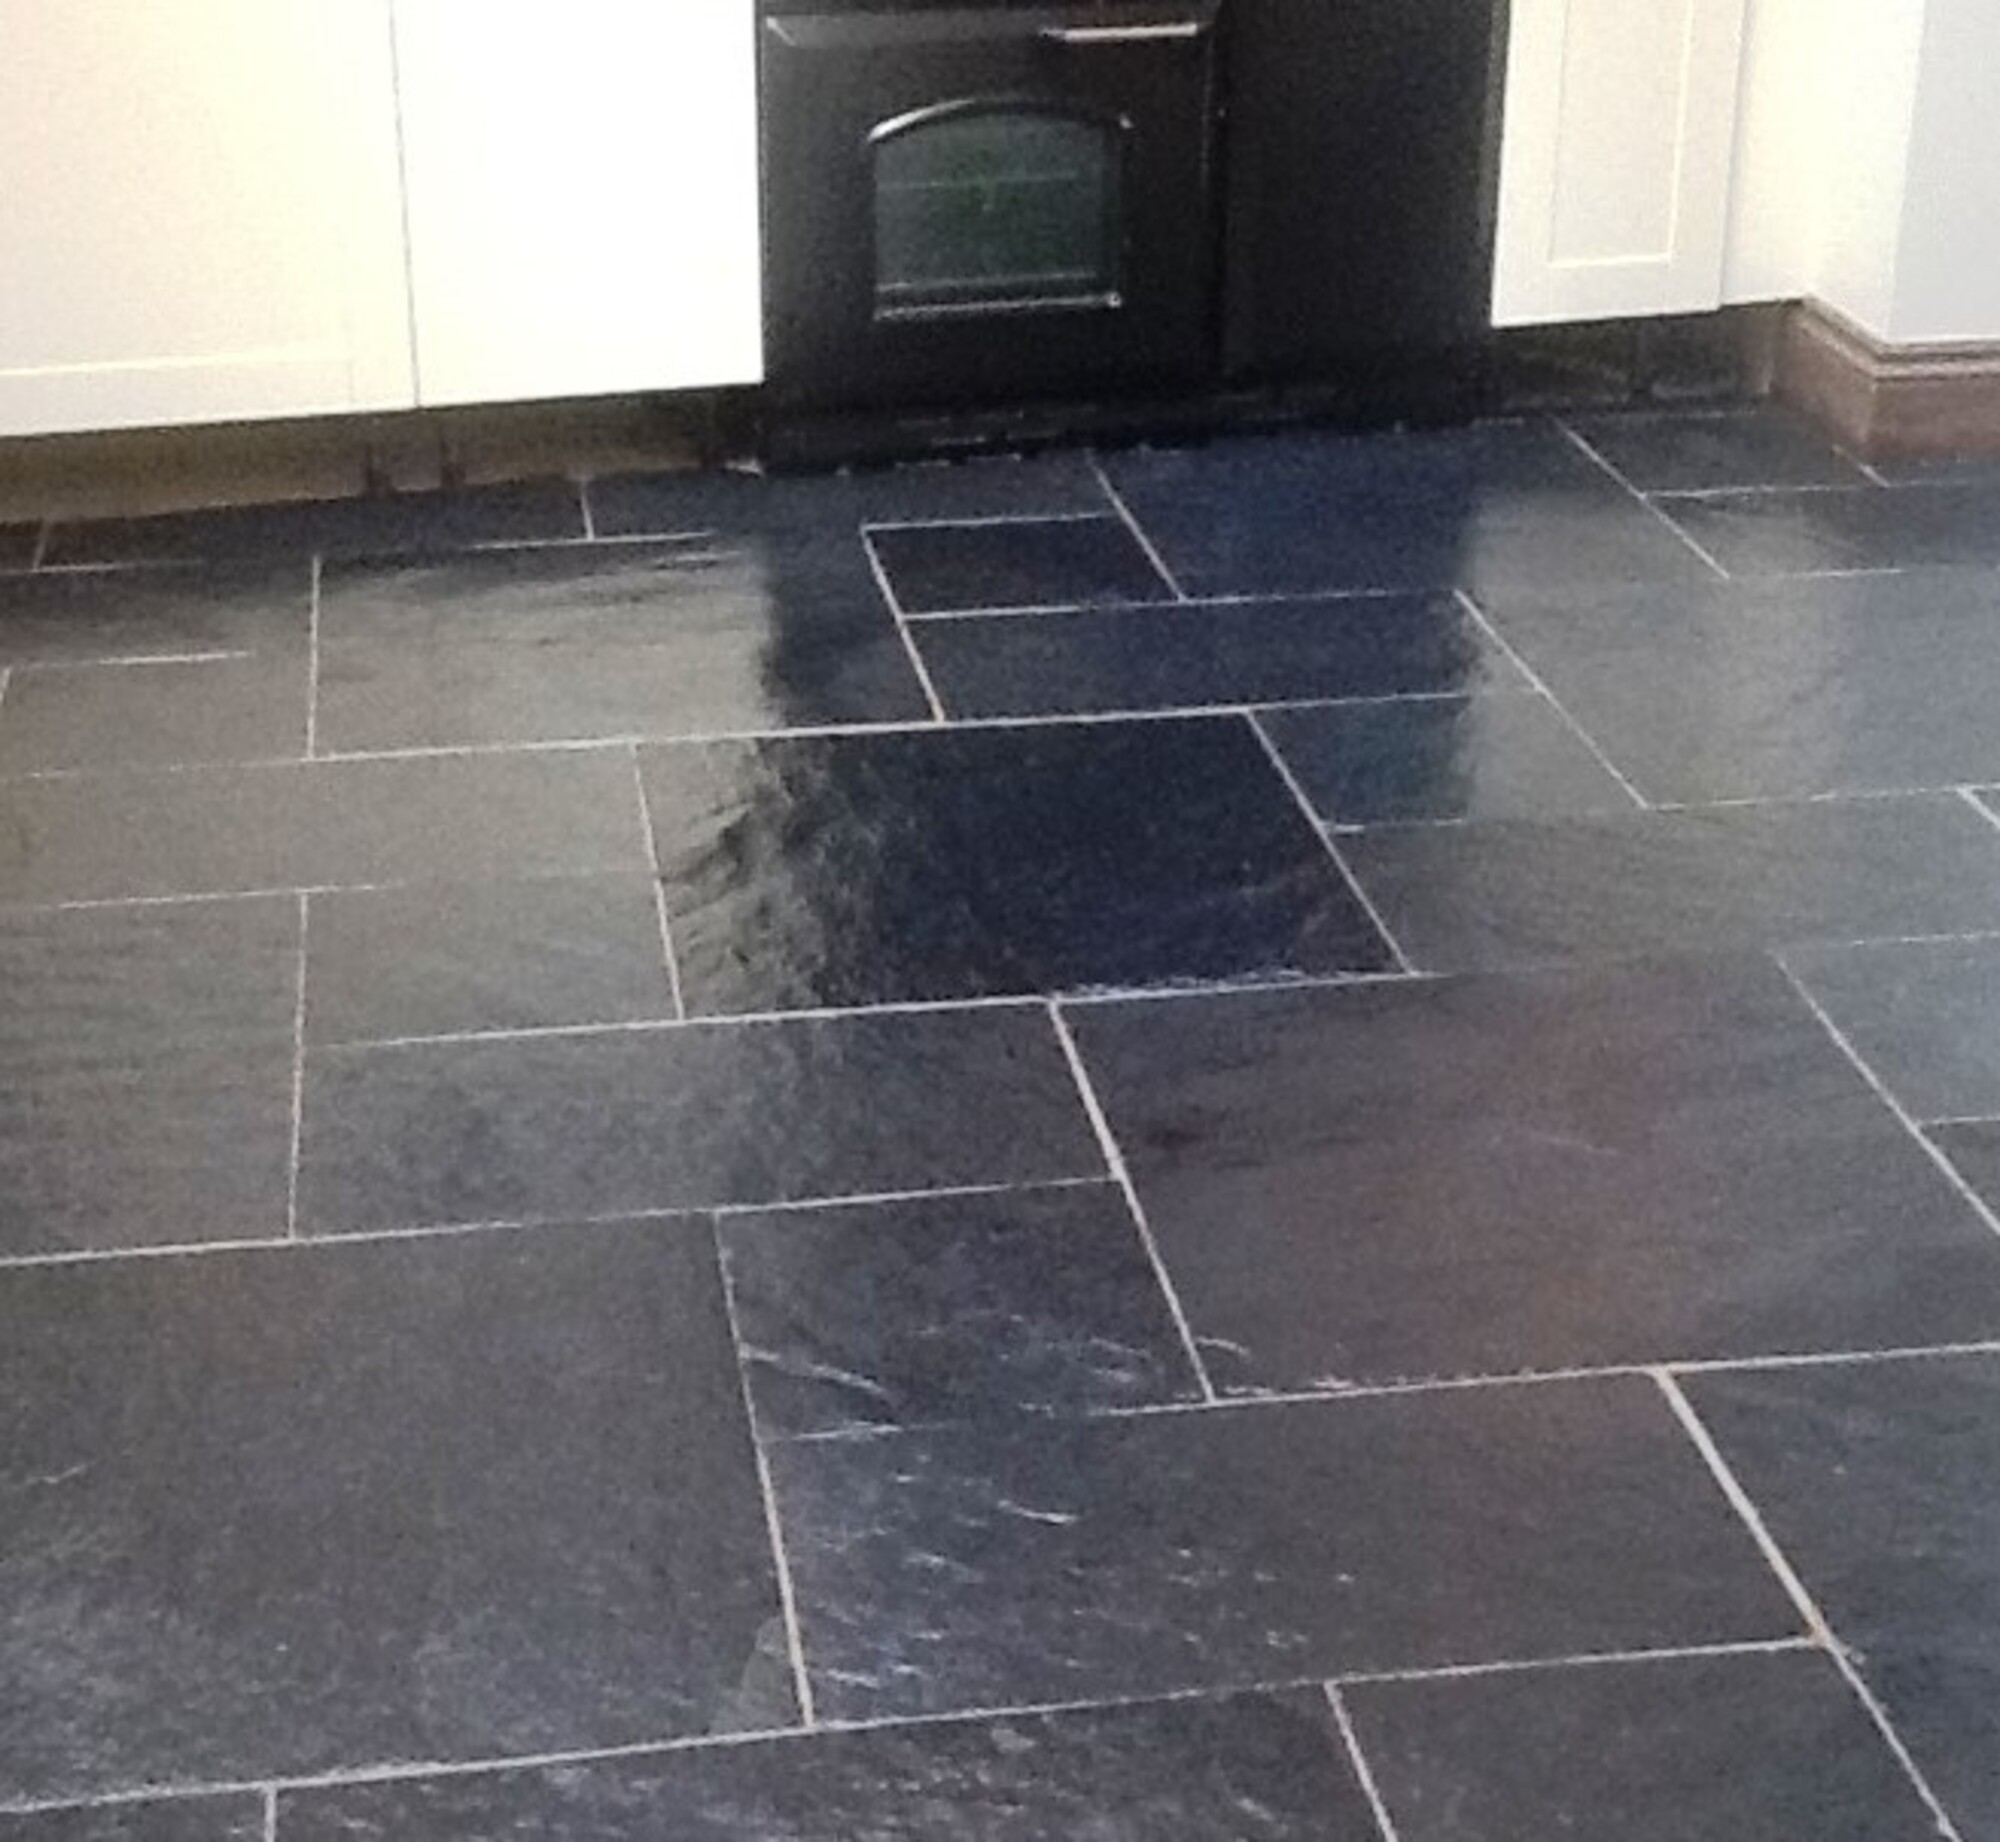 Slate Floor And Patio Sealer In A Wet, Wet Look Tile Sealer